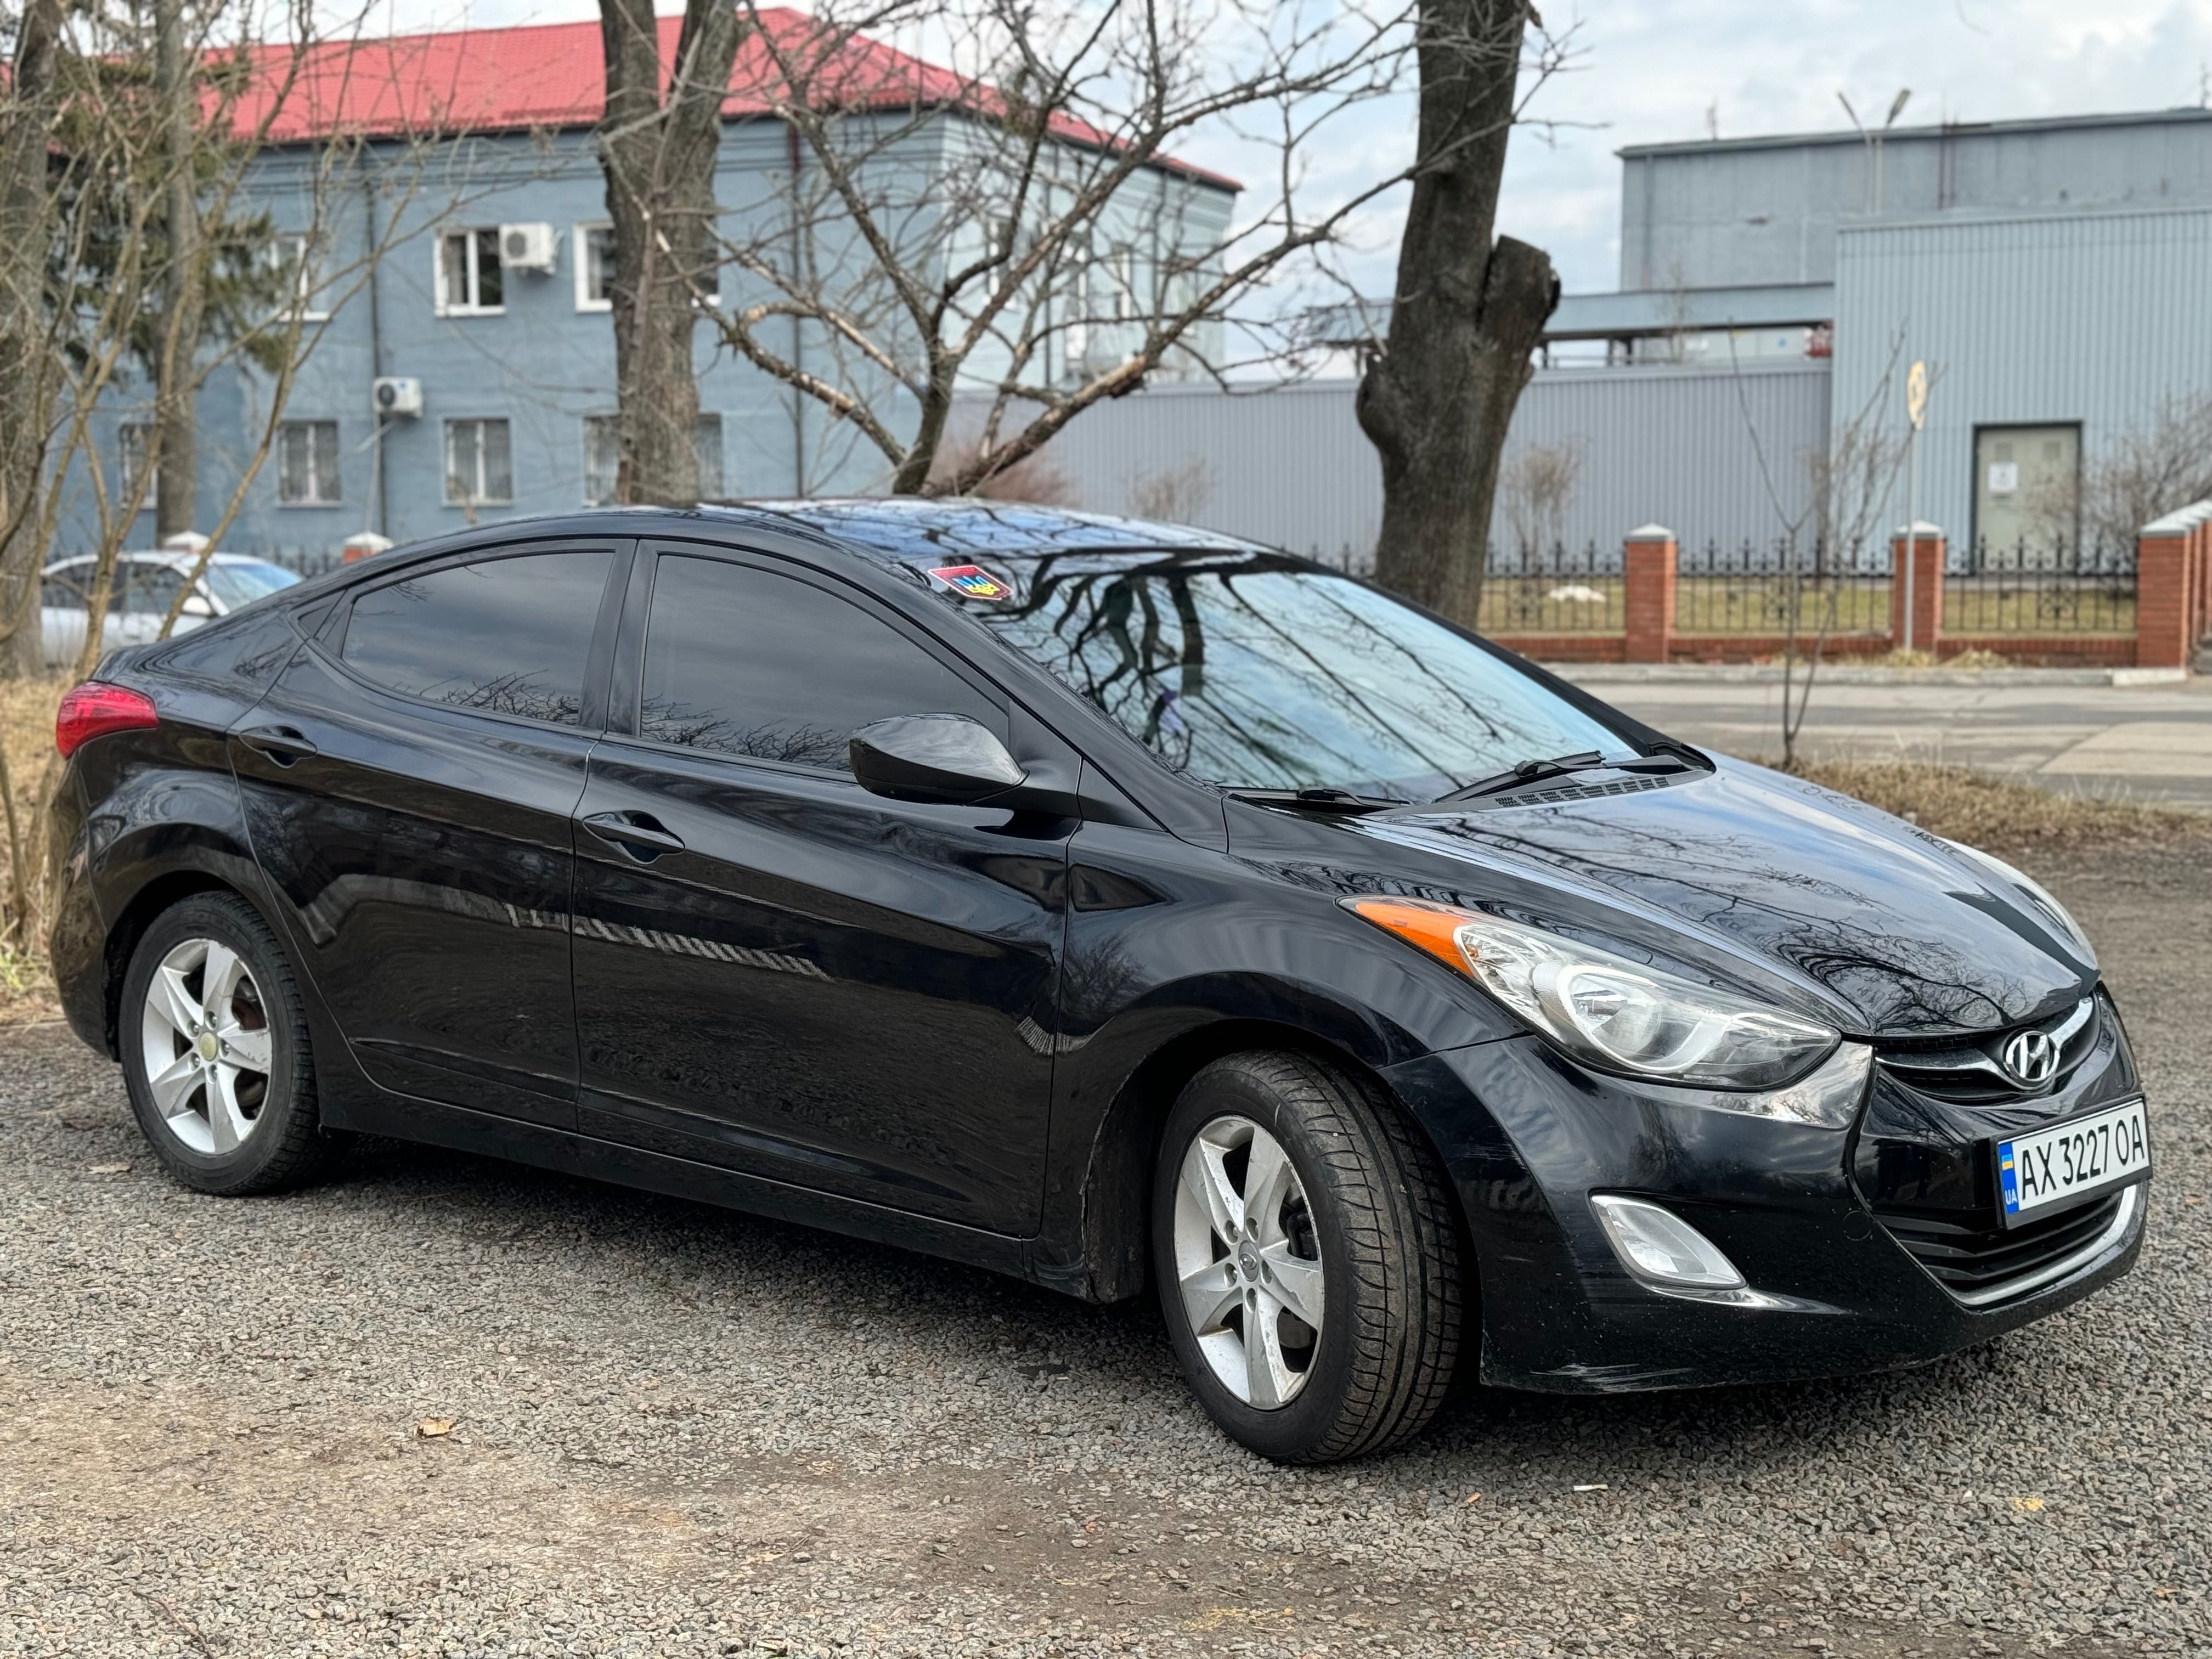 Продам  СВОЙ Hyundai Элантра Спорт чёрного цвета 1,8 2013 бензин